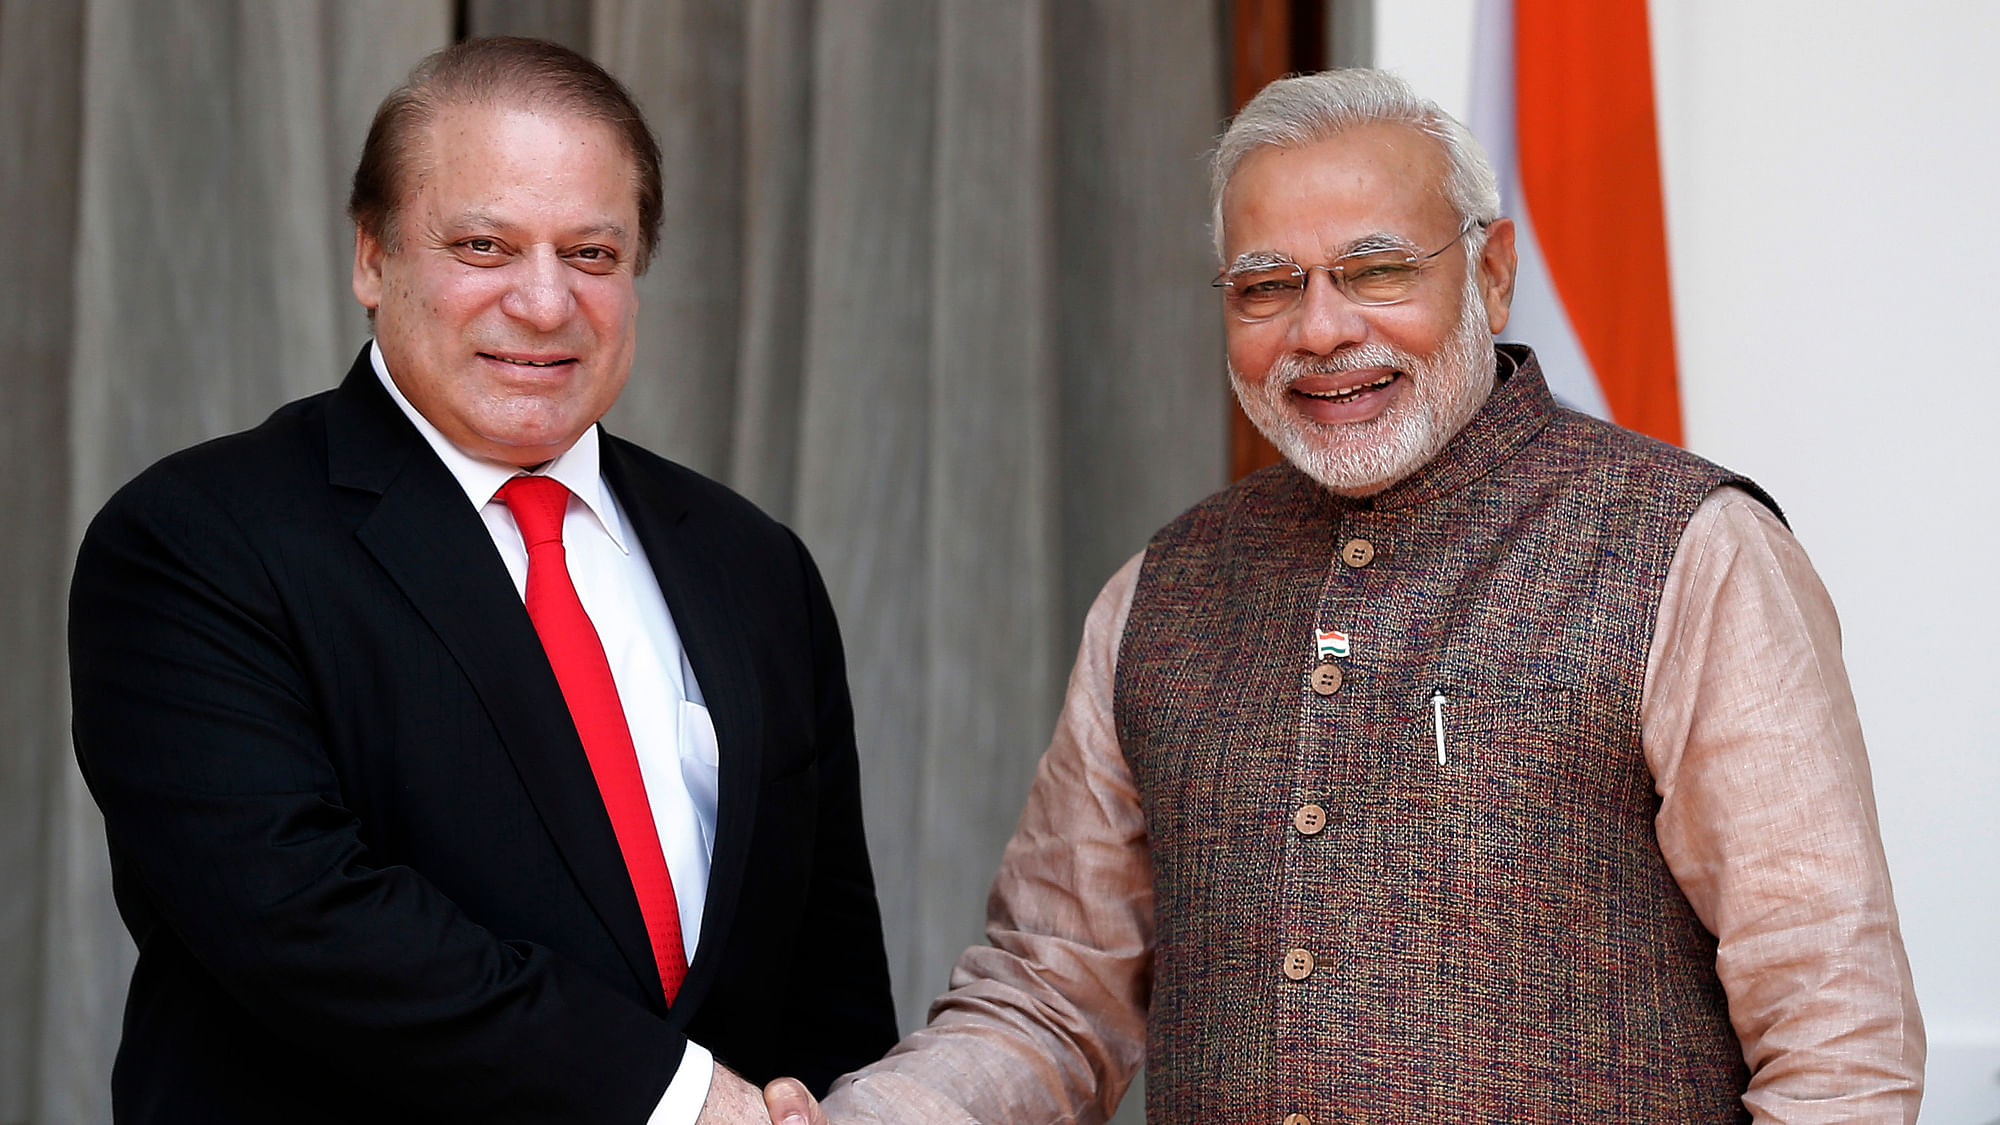 File photo of Prime Minister Narendra Modi with his Pakistani counterpart Nawaz Sharif. (Photo: Reuters)